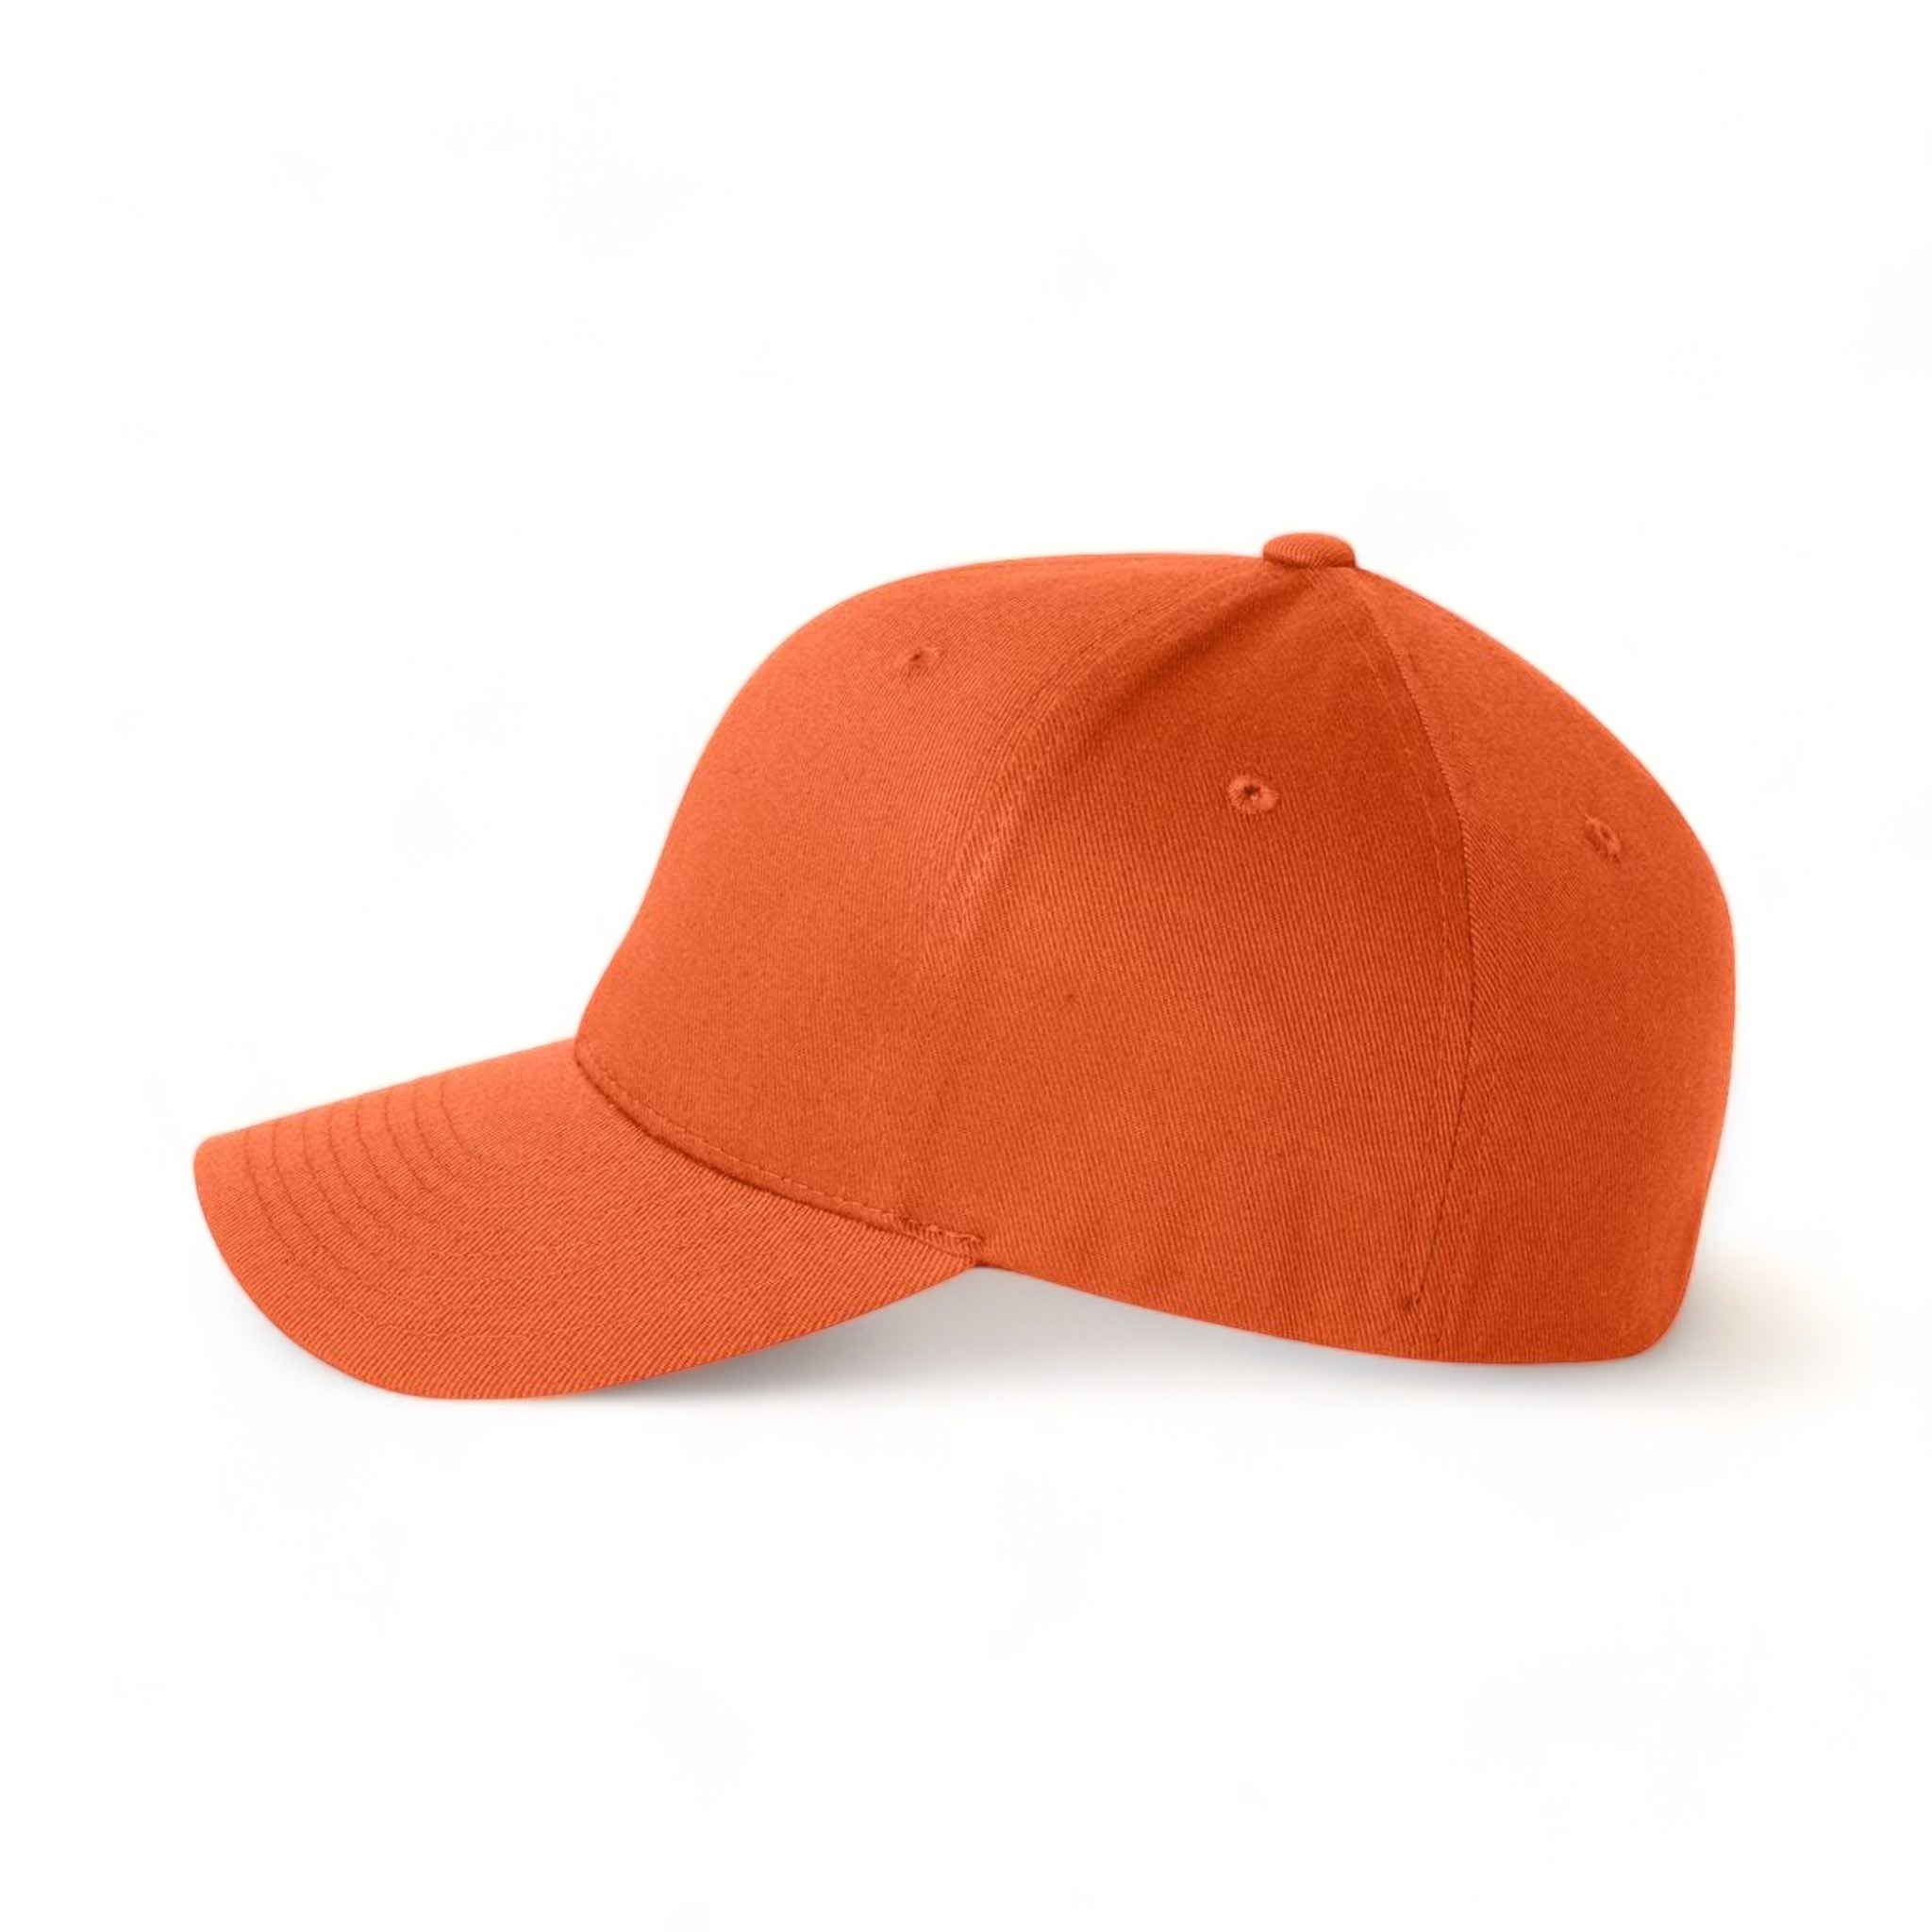 Side view of Flexfit 6277 custom hat in orange